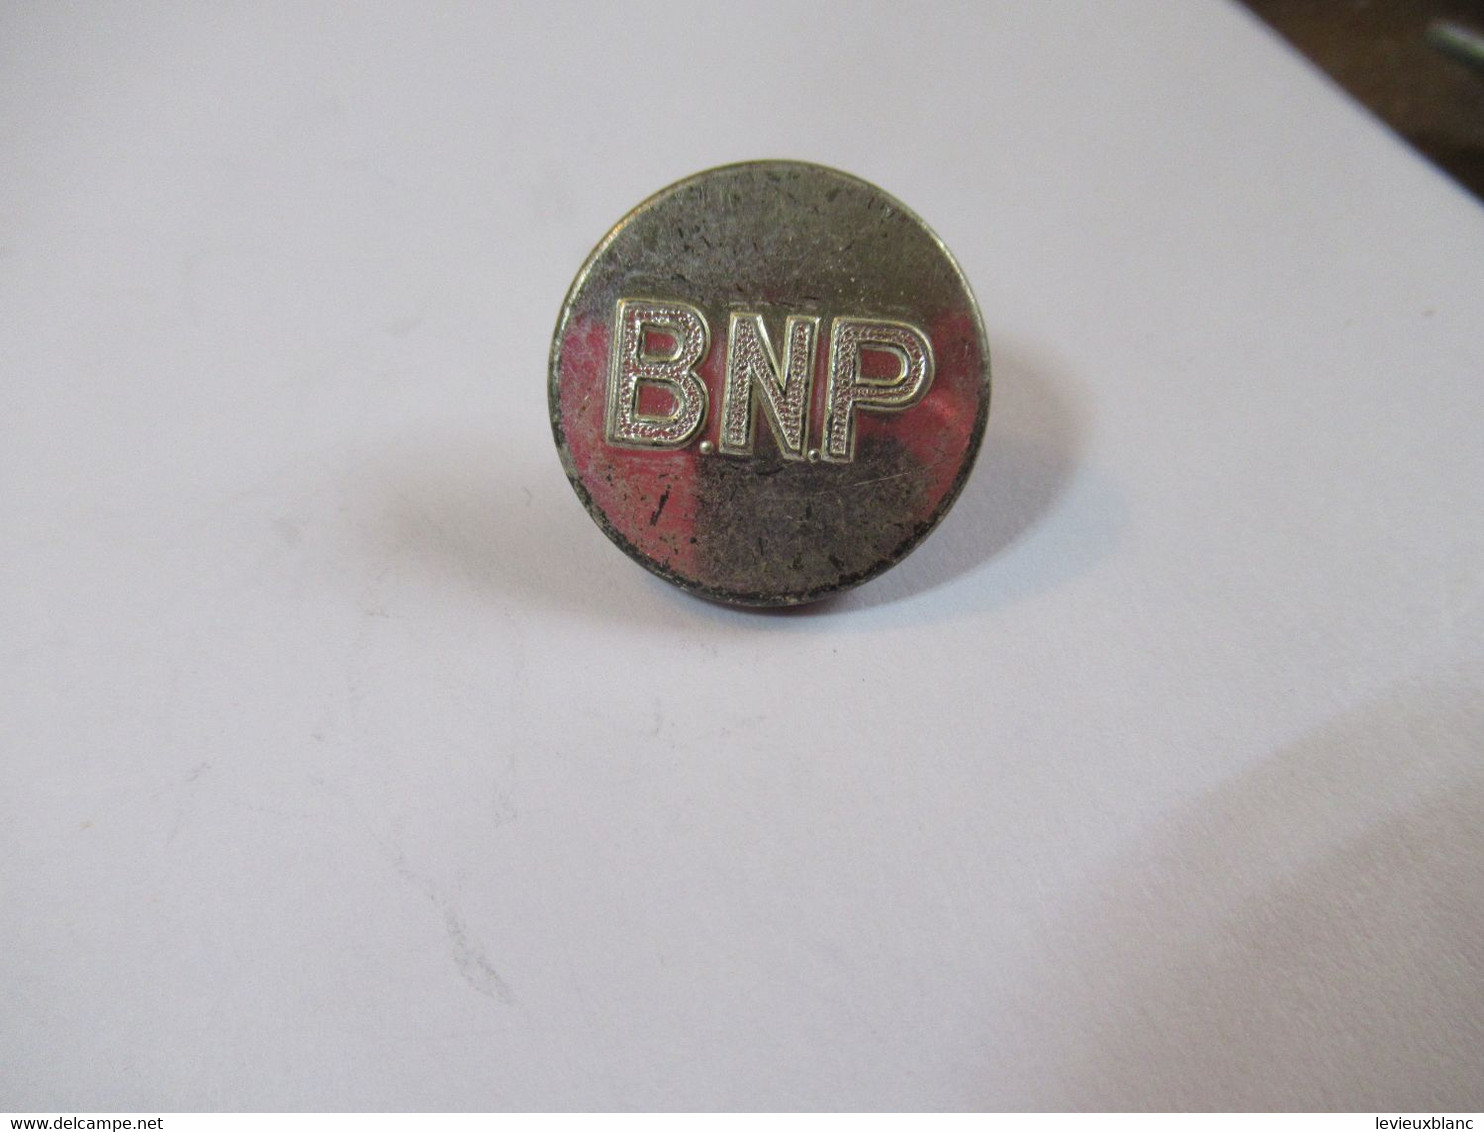 6-Boutons D'uniforme /Banque/B N P /Banque Nationale De Paris /argent /T W & W Paris/1,6  Cm /Vers 1970      BOUT222 - Buttons